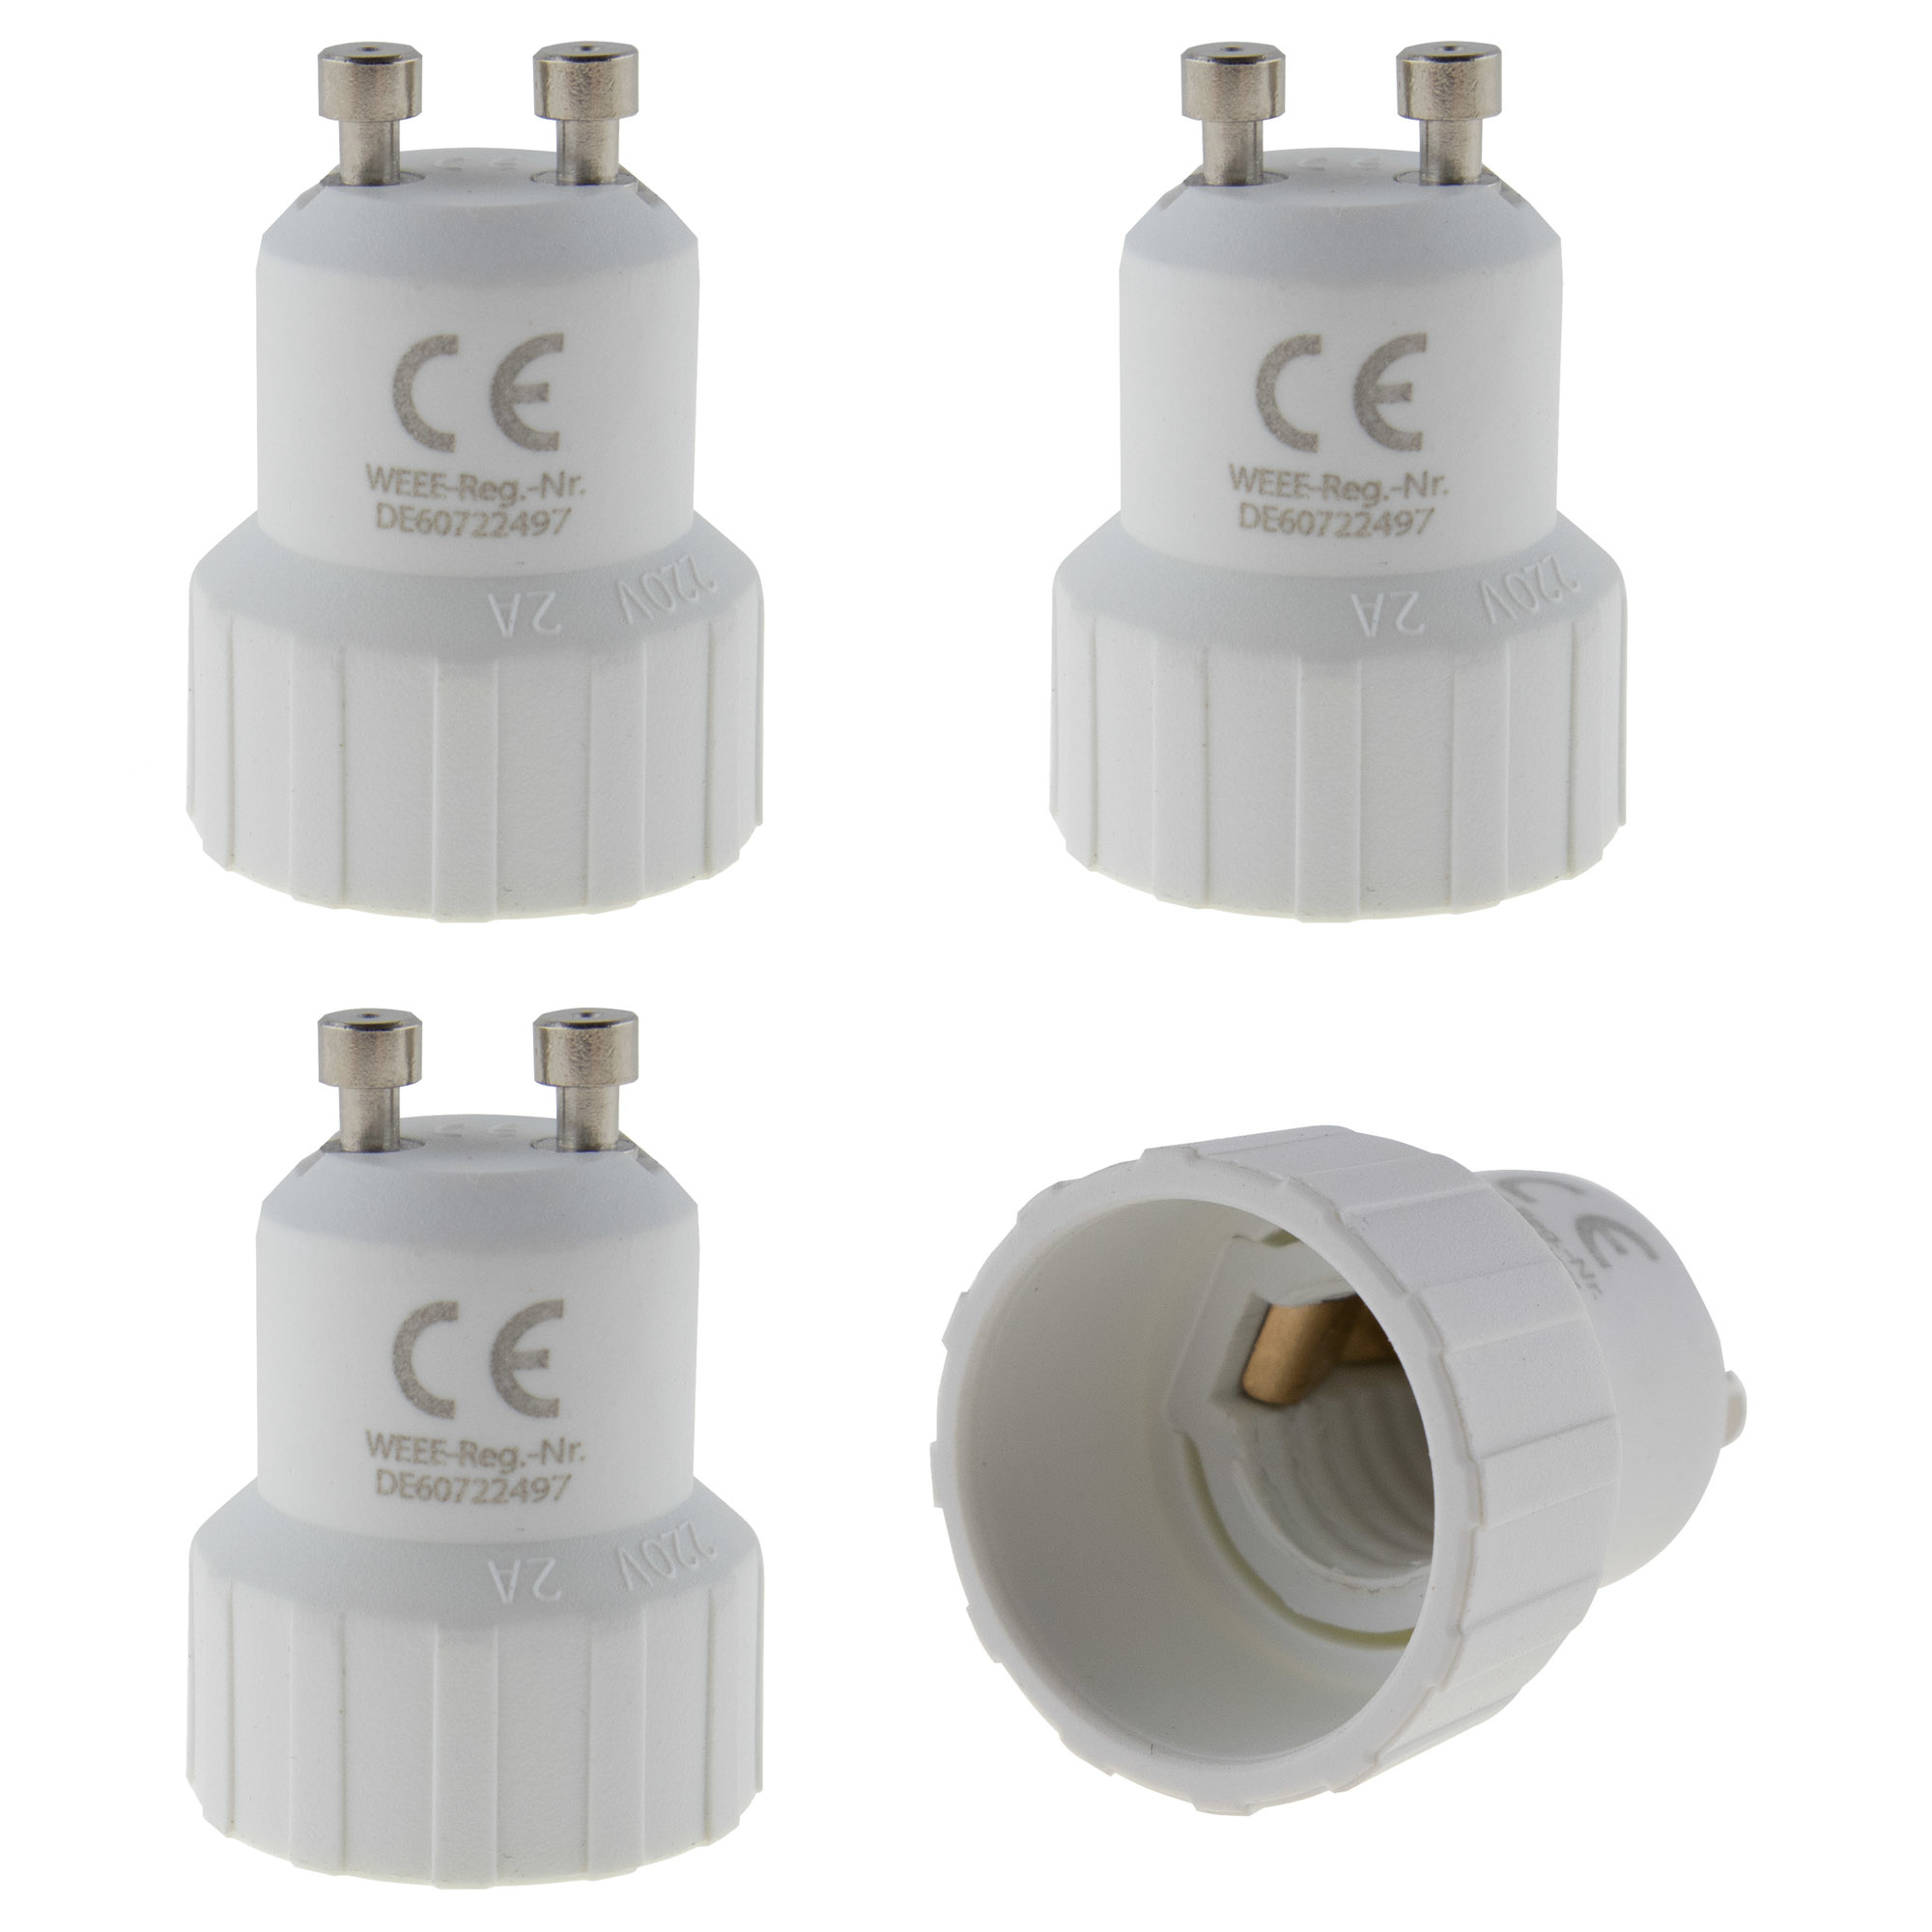 Lamp socket adaptor GU10 to E14 - 4PCS